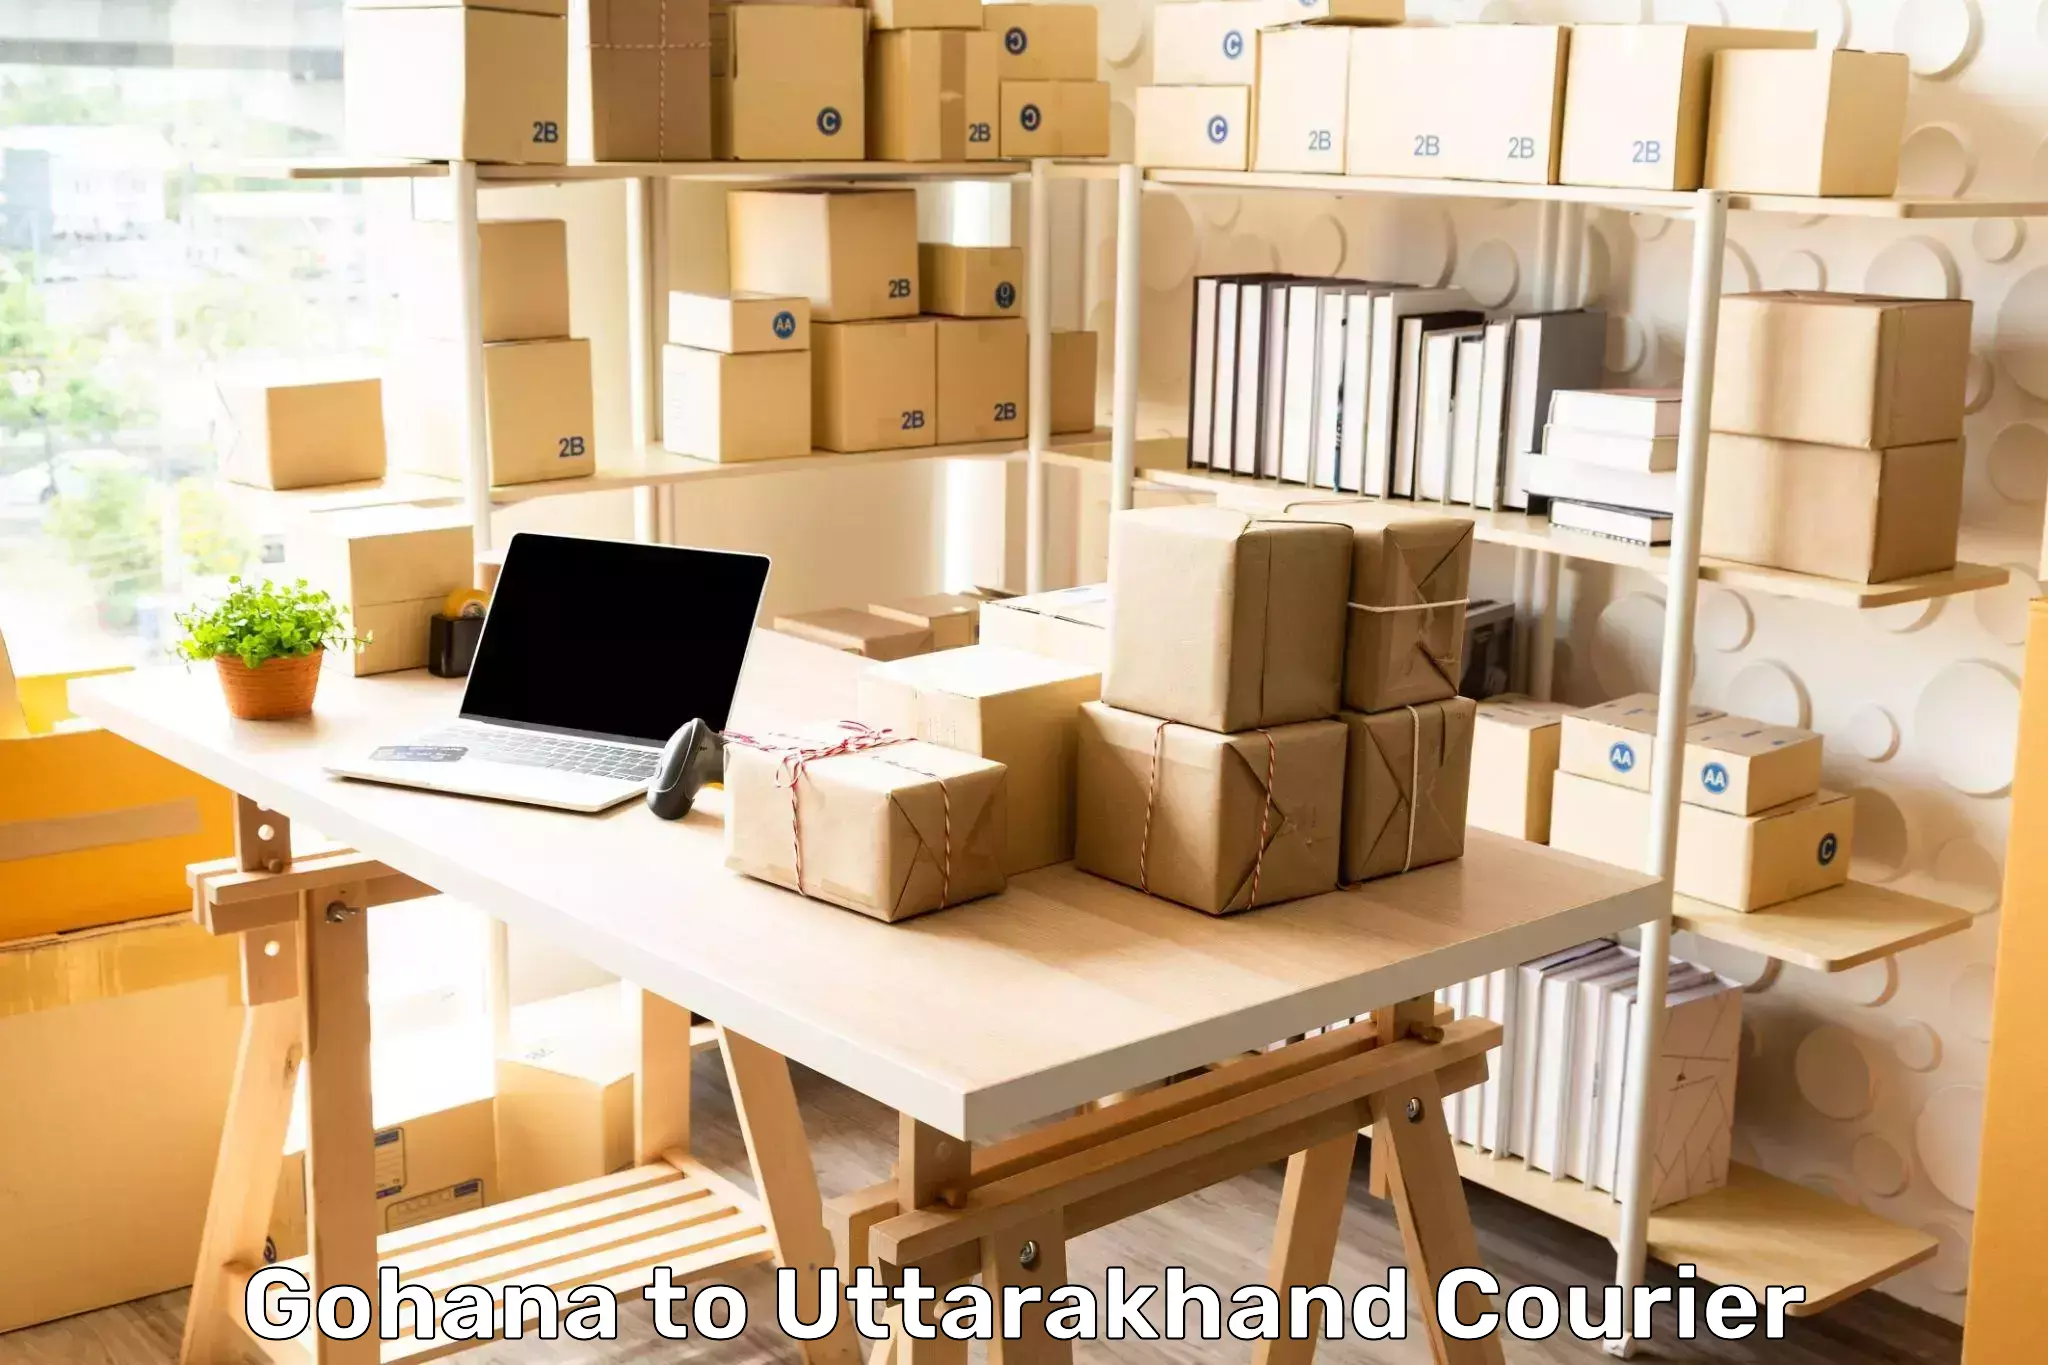 Urgent courier needs Gohana to Uttarakhand